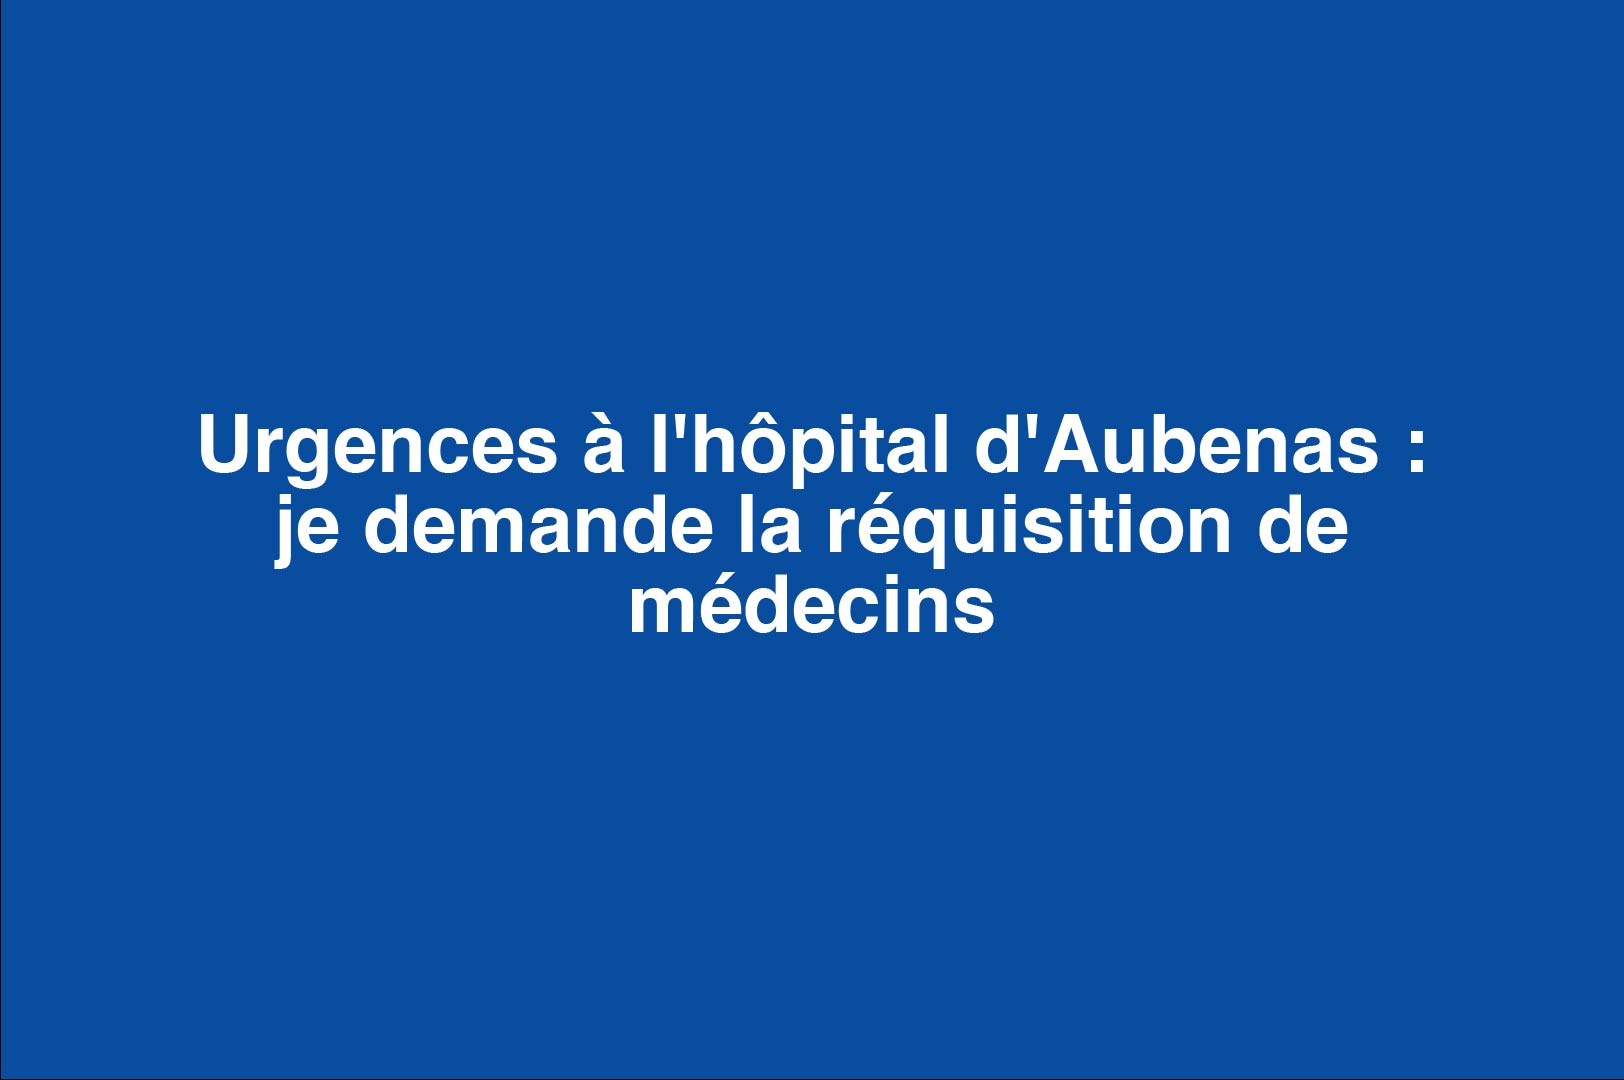 Urgences à l’hôpital d’Aubenas : je demande la réquisition de médecins